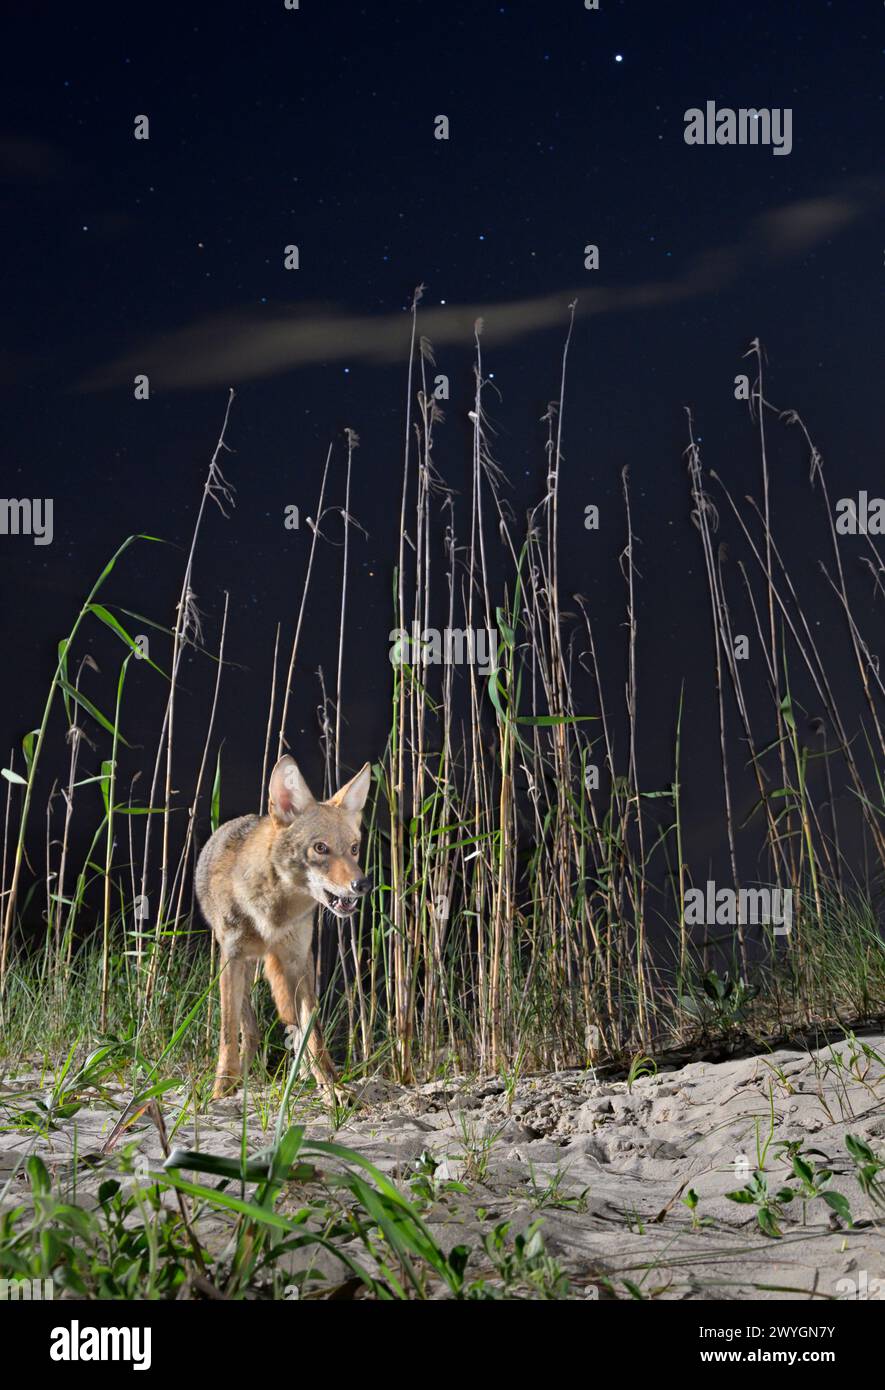 Kojote (Canis latrans) mit offenem Mund auf Sanddünen bei Nacht unter Sternenhimmel, Galveston, Texas. Diese Population hat Gene des Roten Wolfs (Canis rufus). Stockfoto